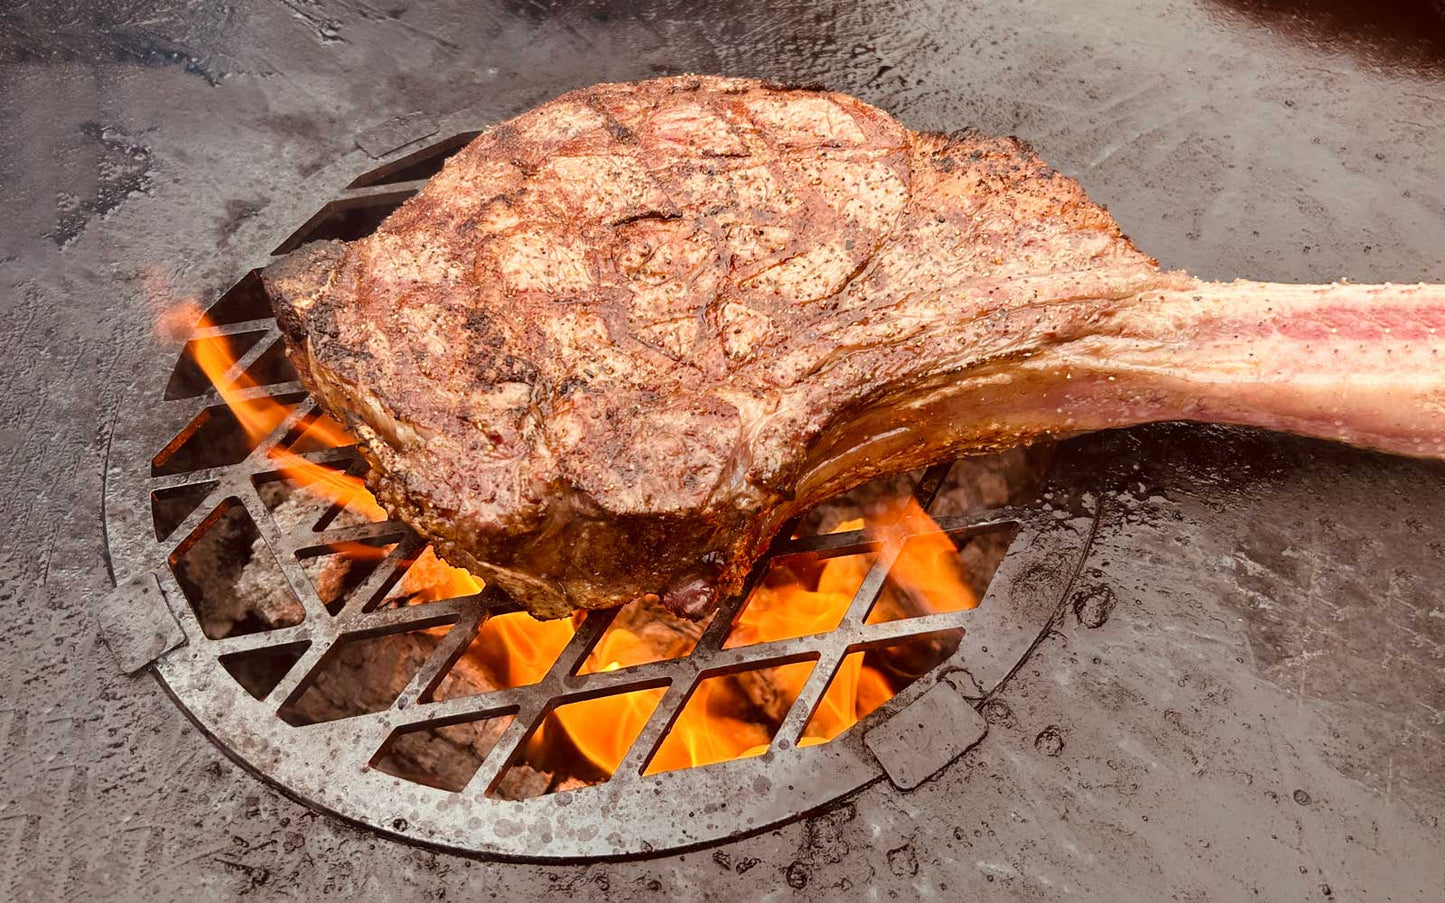 Mit unserem FENNEK Grillrost wird dein Steak zum absoluten Branding-Highlight! Hergestellt aus robustem 6 mm dickem Edelstahl und universell einsetzbar, kannst du ihn direkt auf die Feuerplatte oder Krone montieren und dein Grillgut perfekt garen. Mit dem integrierten FENNEK Kopf kannst du dein Steak und andere Leckereien auf ausgefallene Weise branden und deinen Gästen ein unvergessliches Grill-Erlebnis bieten. Der Grillrost ist nicht nur stylisch, sondern auch äußerst praktisch. 